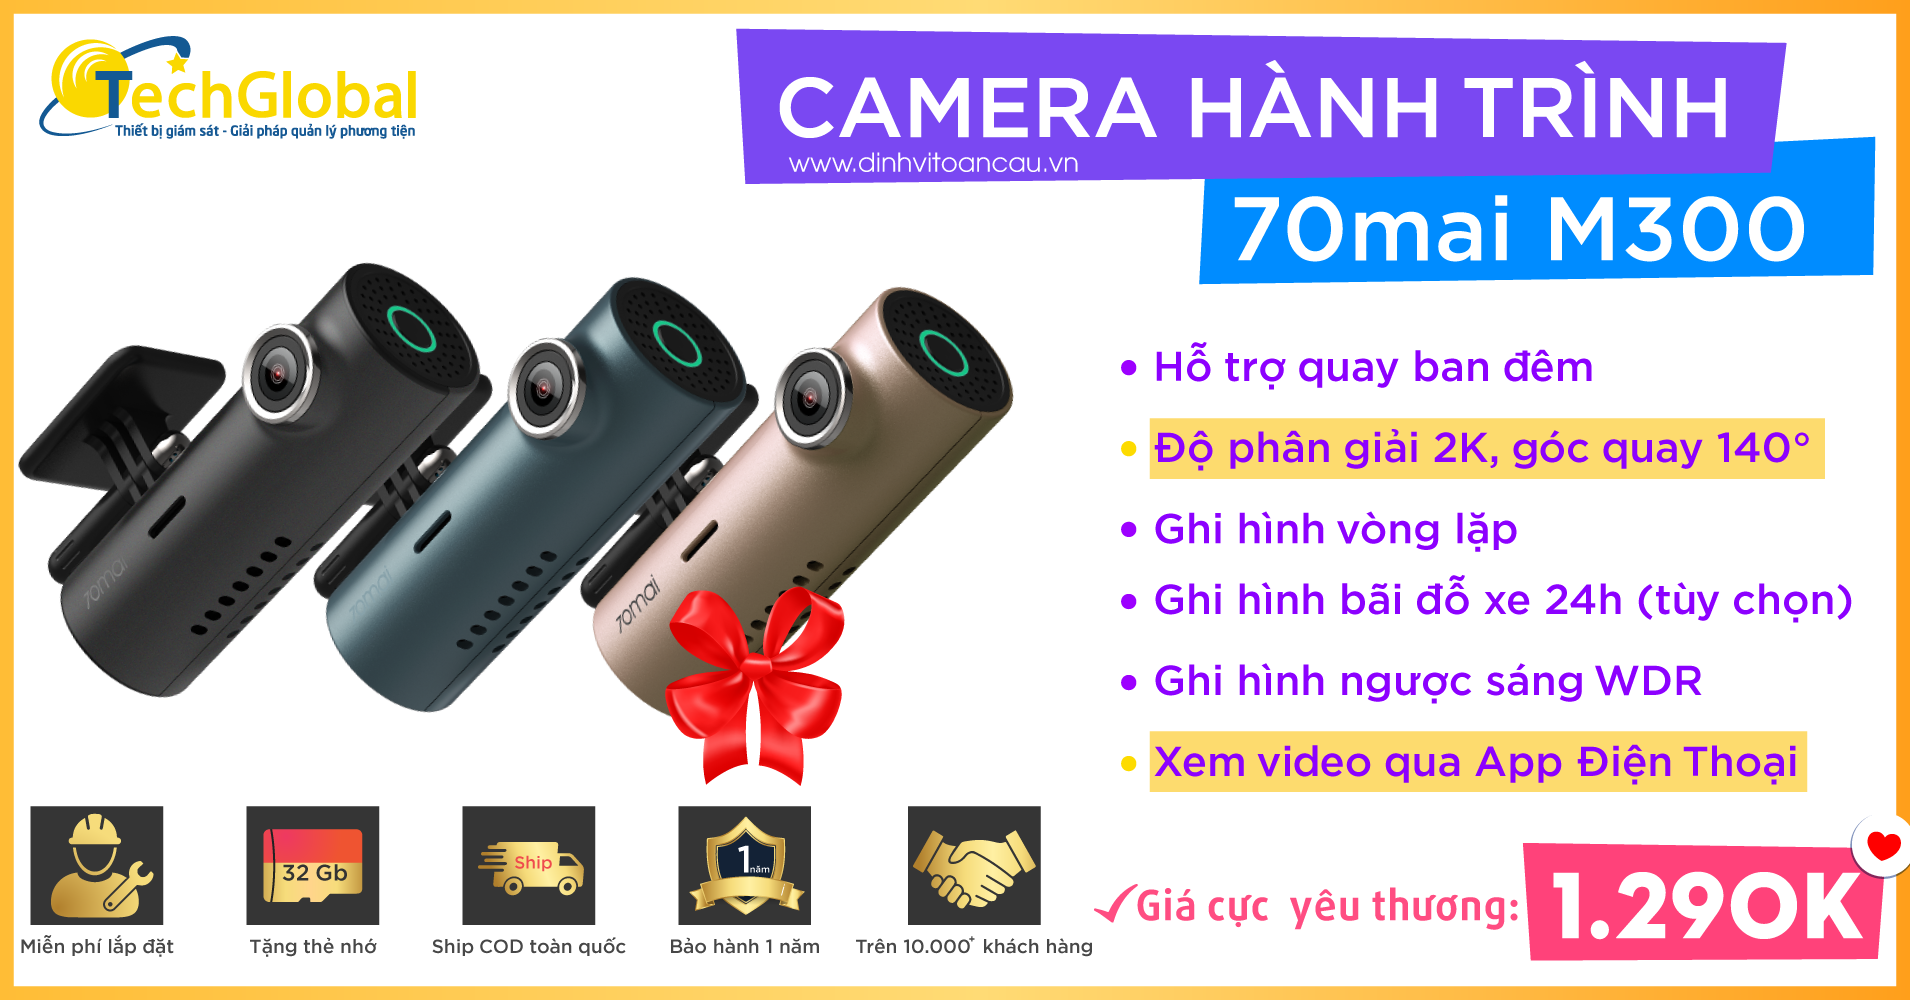 Camera-hanh-trinh-70mai-m300-sieu-nho